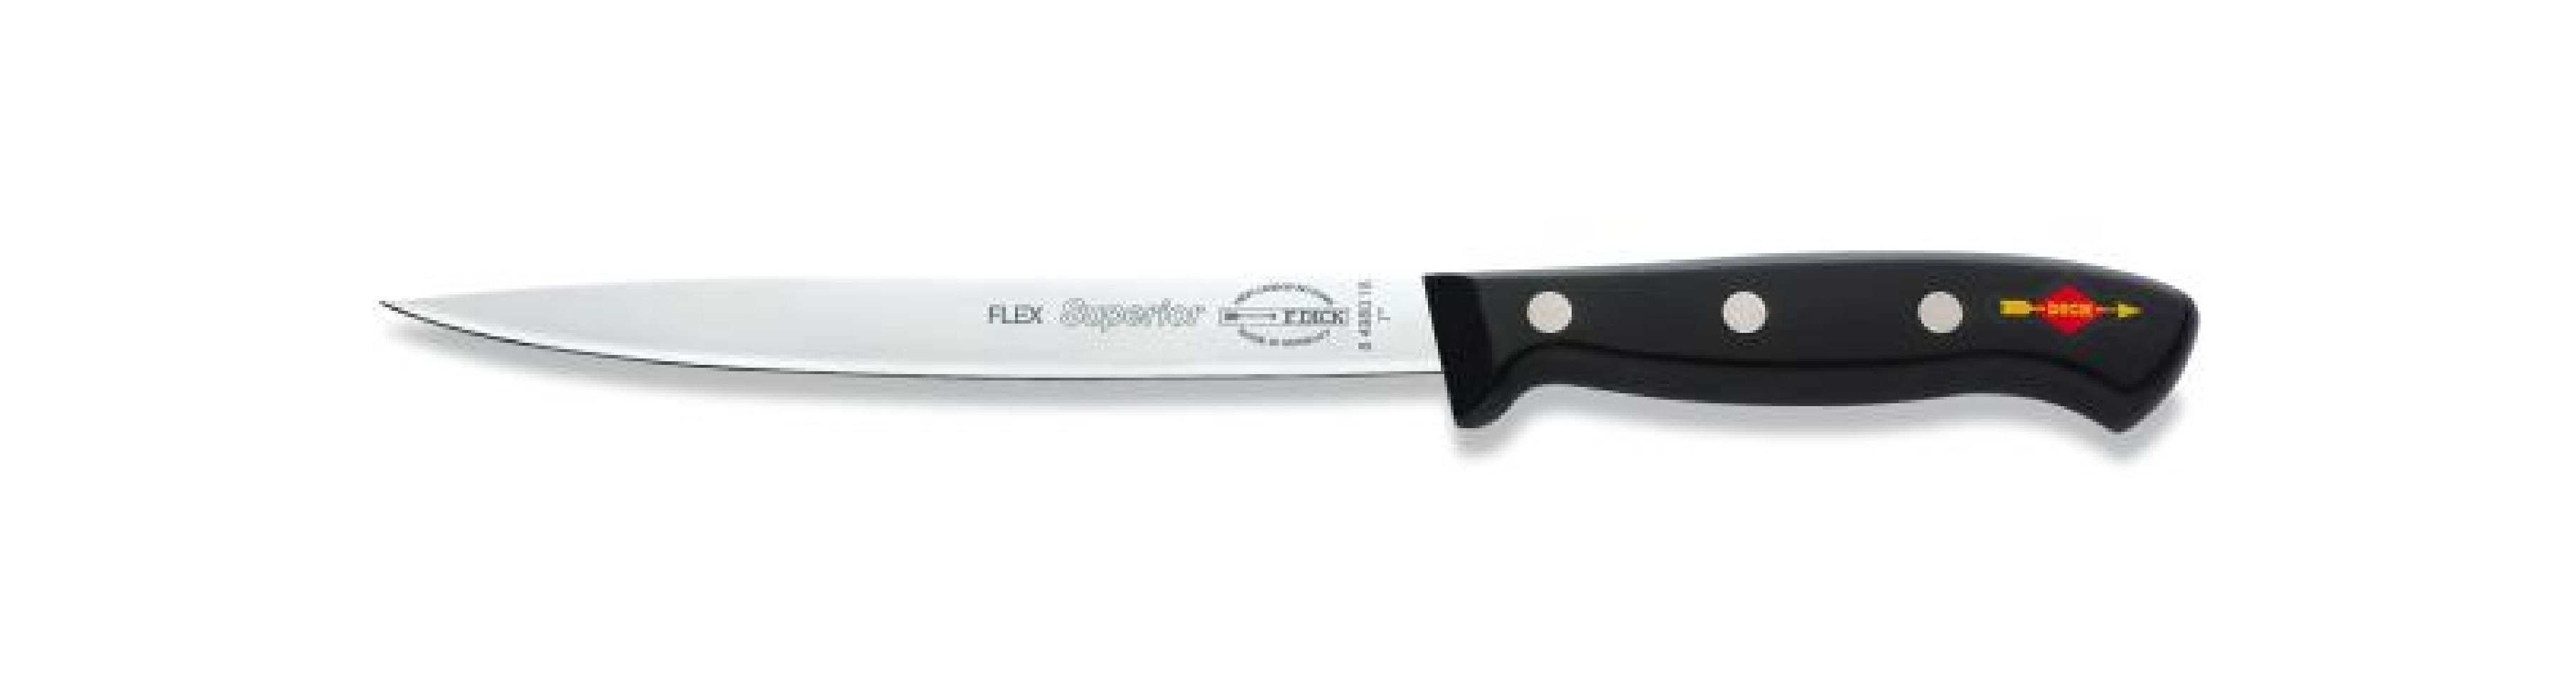 Messer 8498018 Dick filetieren 18 Dick Filetiermesser Superior Filetiermesser cm